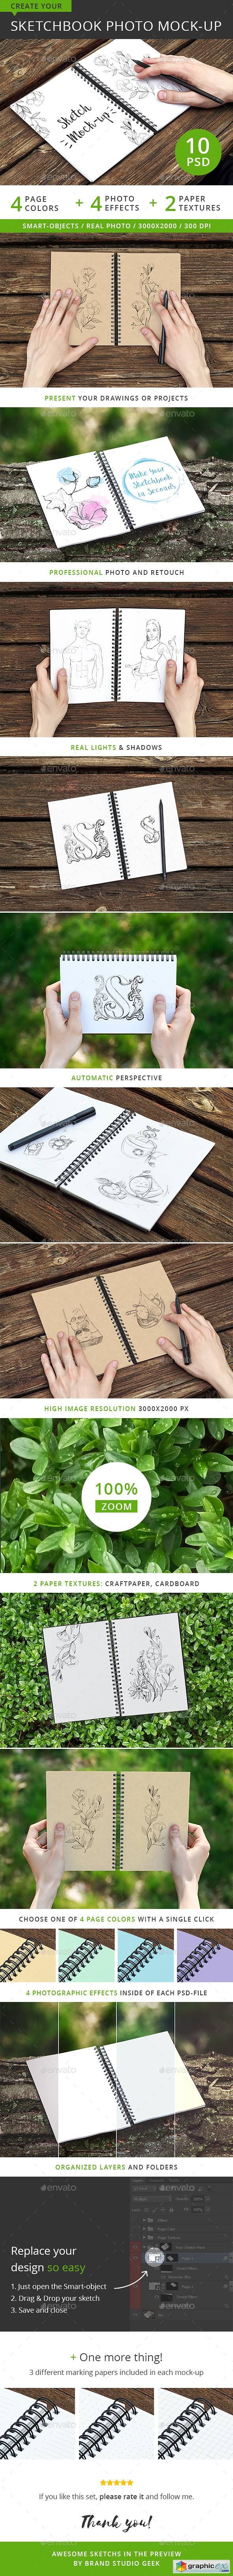 Sketchbook Photo Mock-up